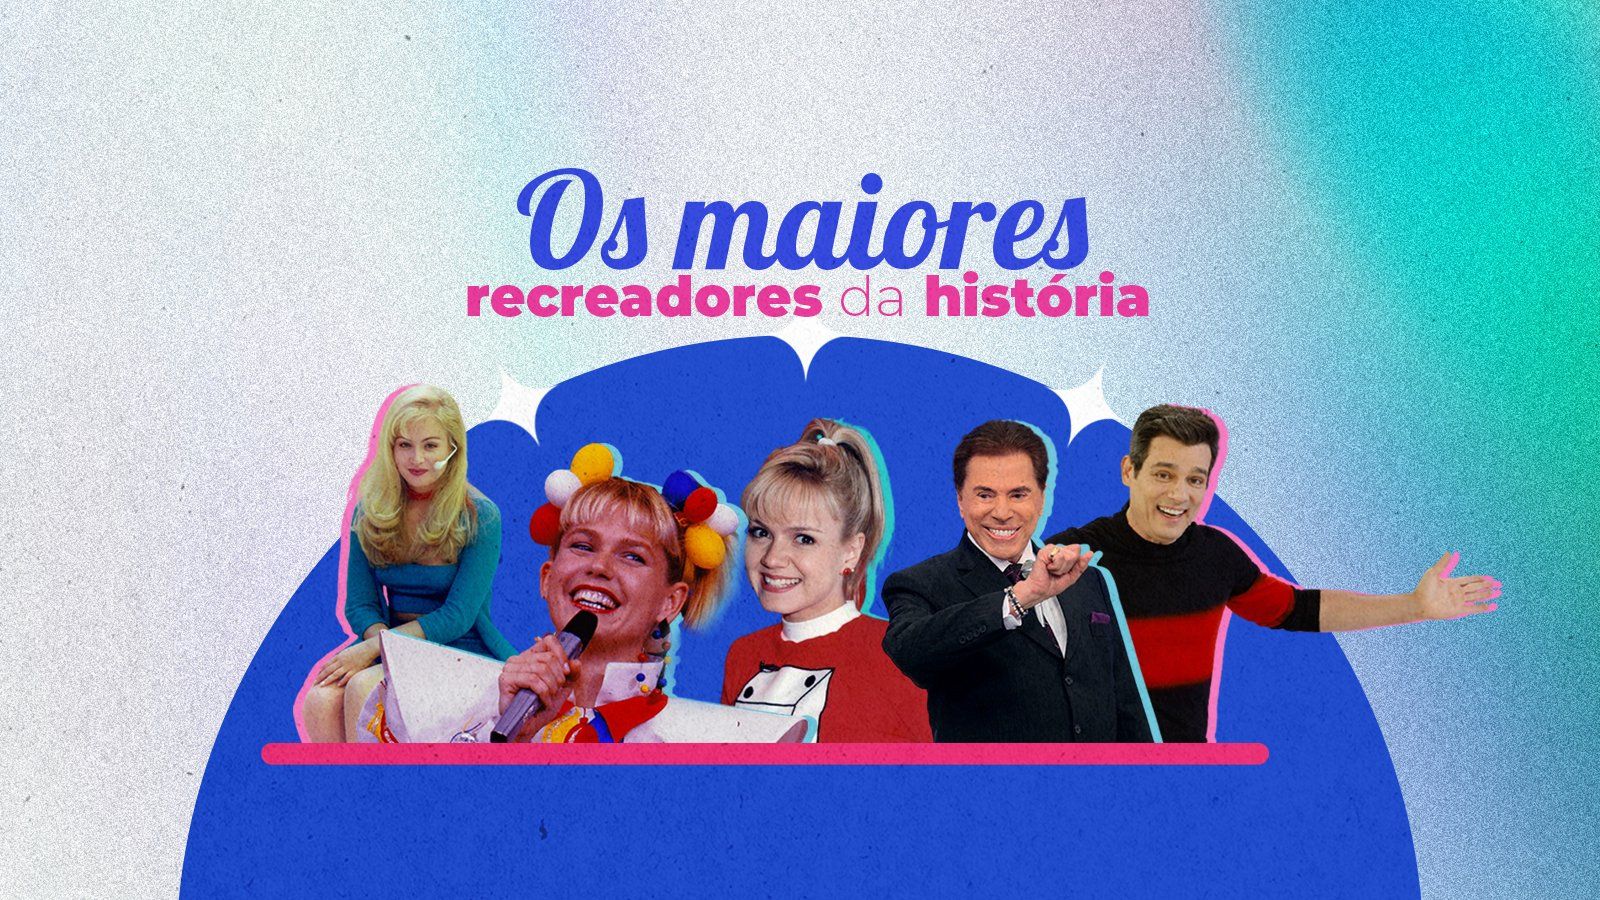 Maiores recreadores da história: Eliana, Celso Portiolli, Angélica, Priscilla e Yudi, Xuxa Meneghel